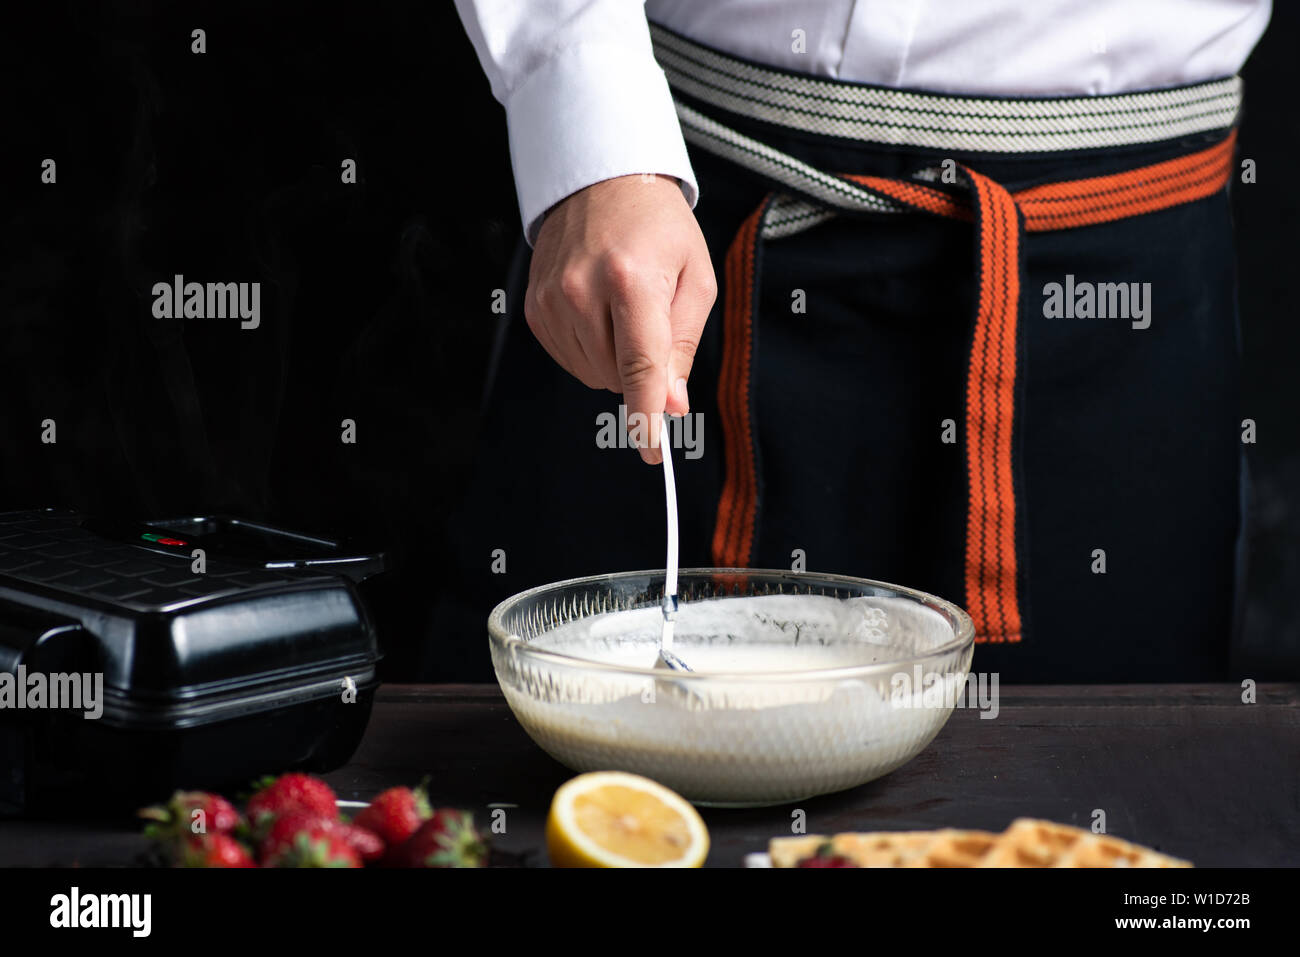 Mélanger la pâte à gaufre Chef dans un bol close up Banque D'Images